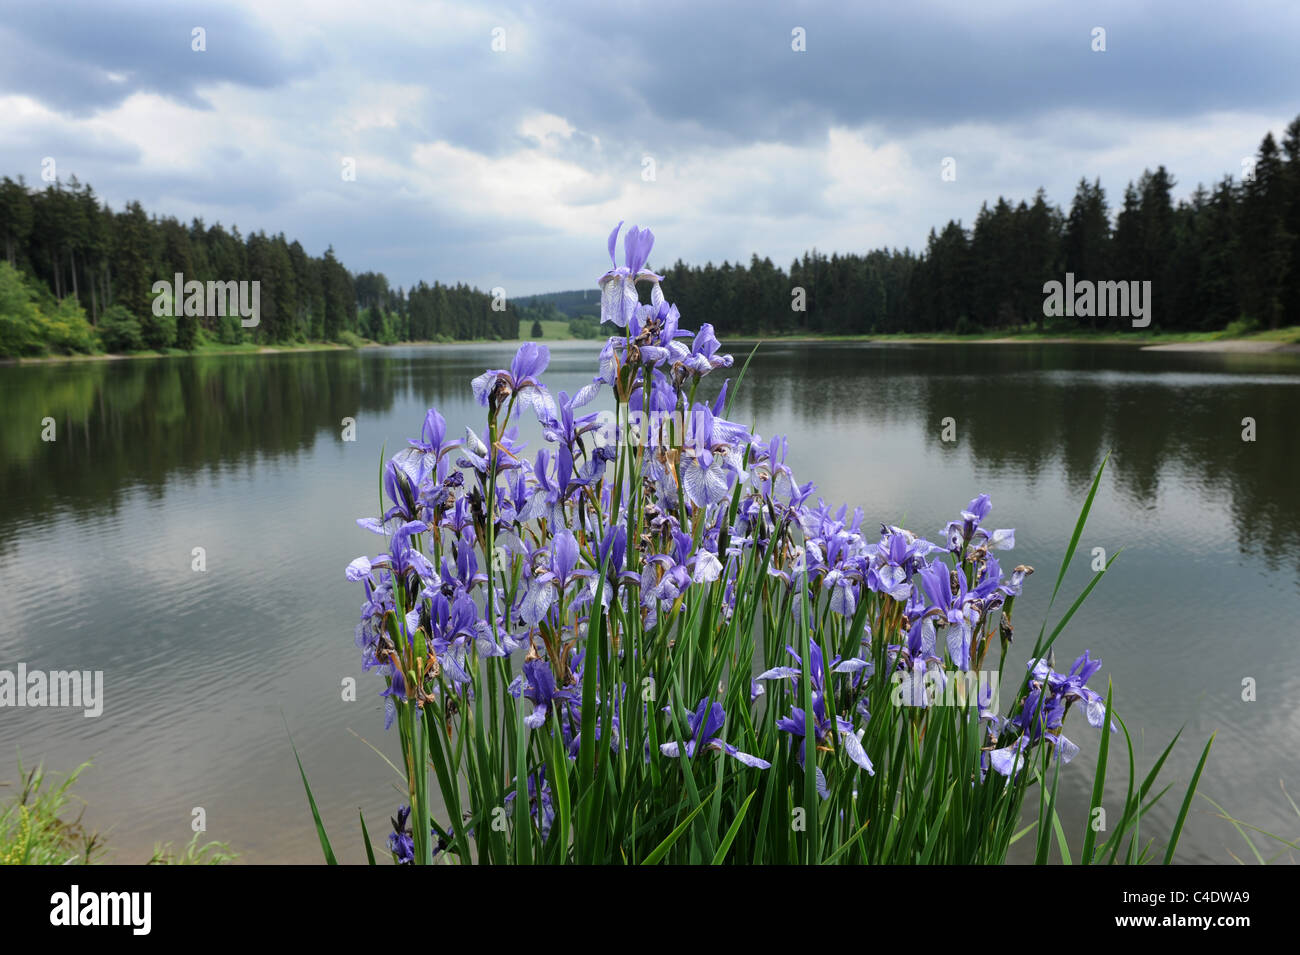 Iris blu crescente selvatici accanto al lago Prinzenteich nella regione di Harz di Germania Foto Stock